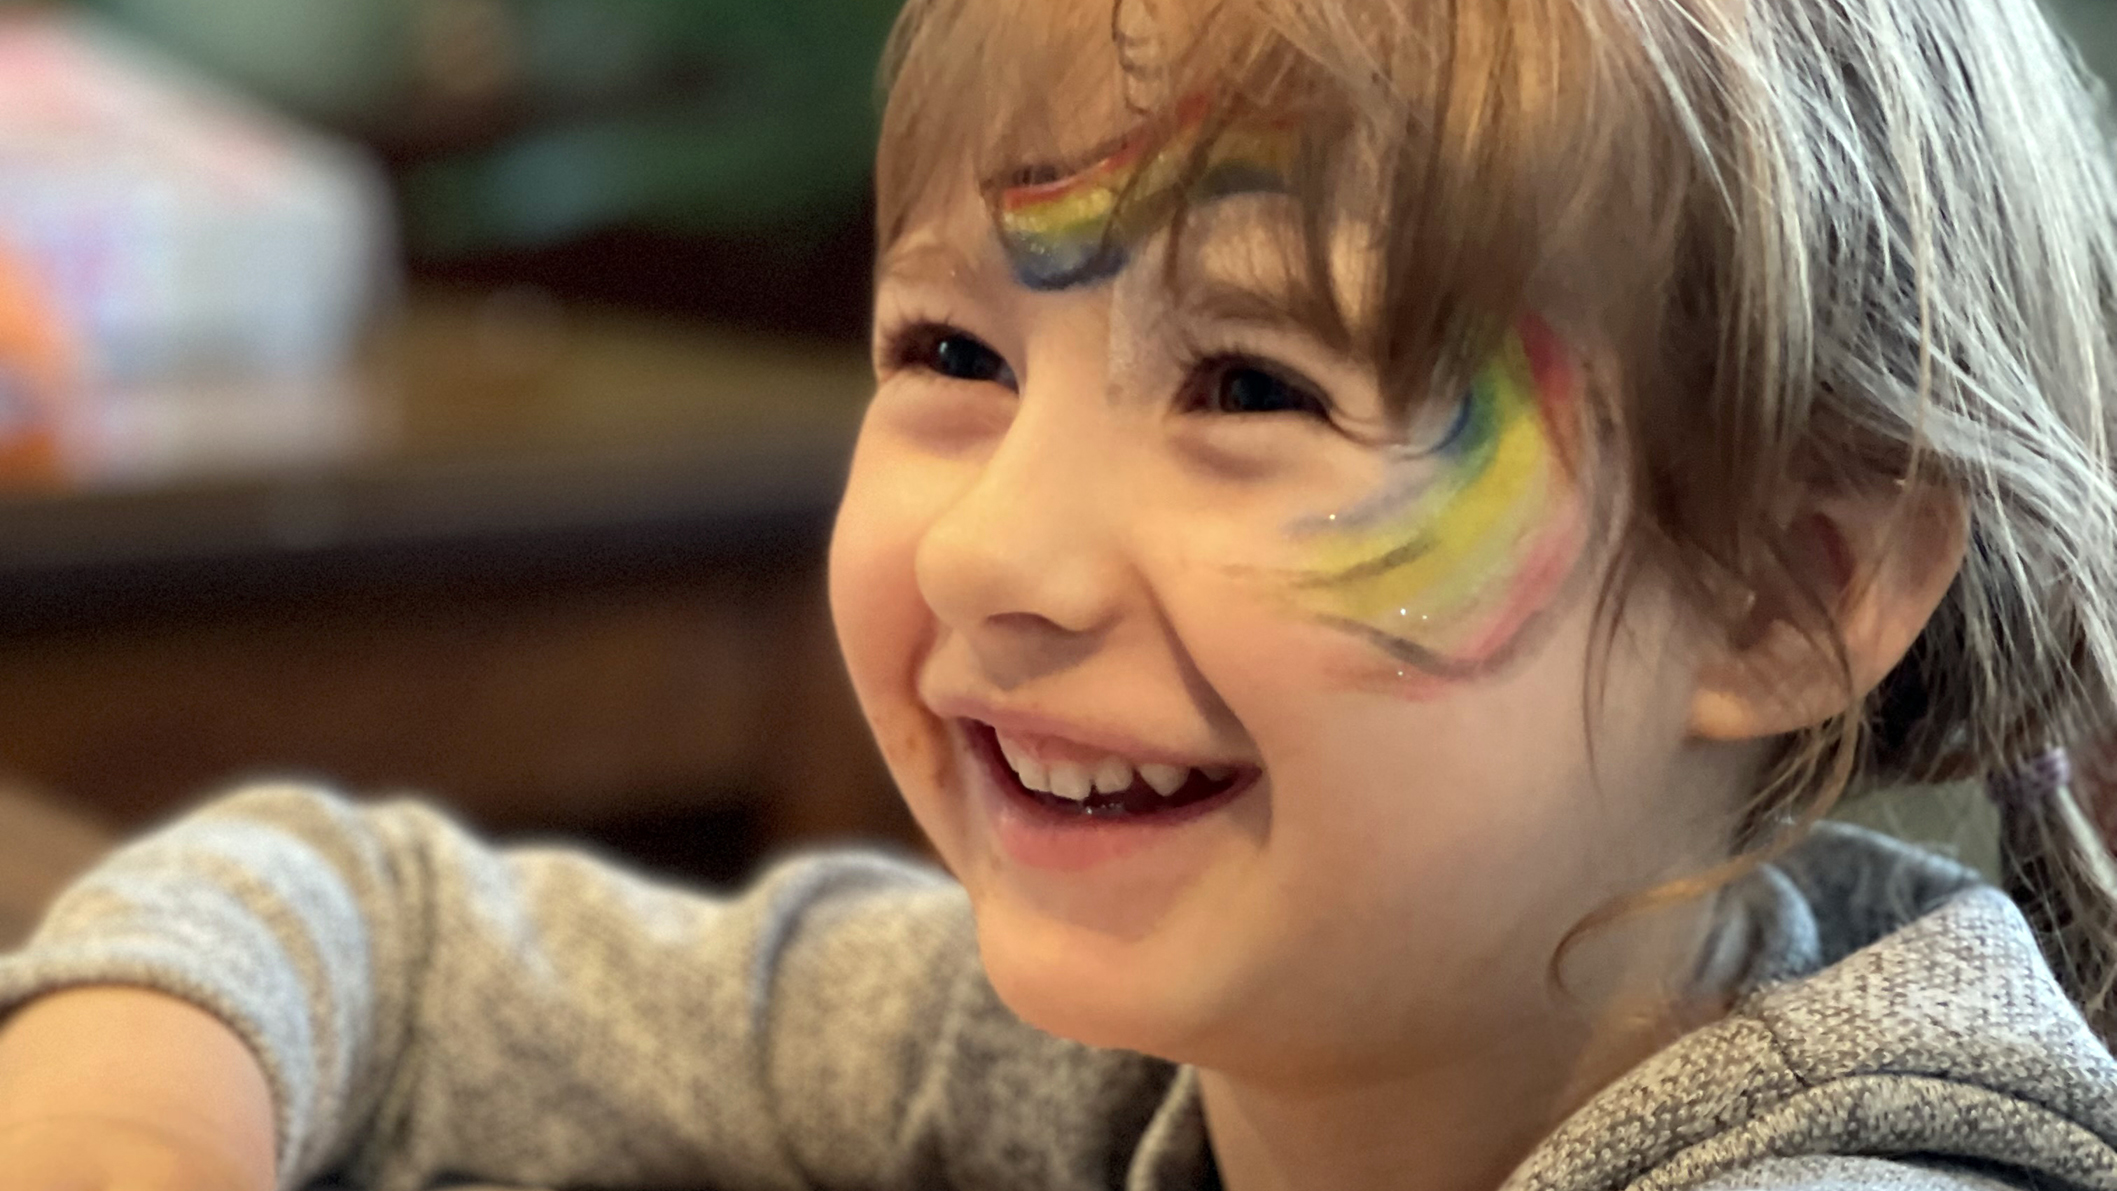 Ukrainske børn på flugt får støtte gennem leg